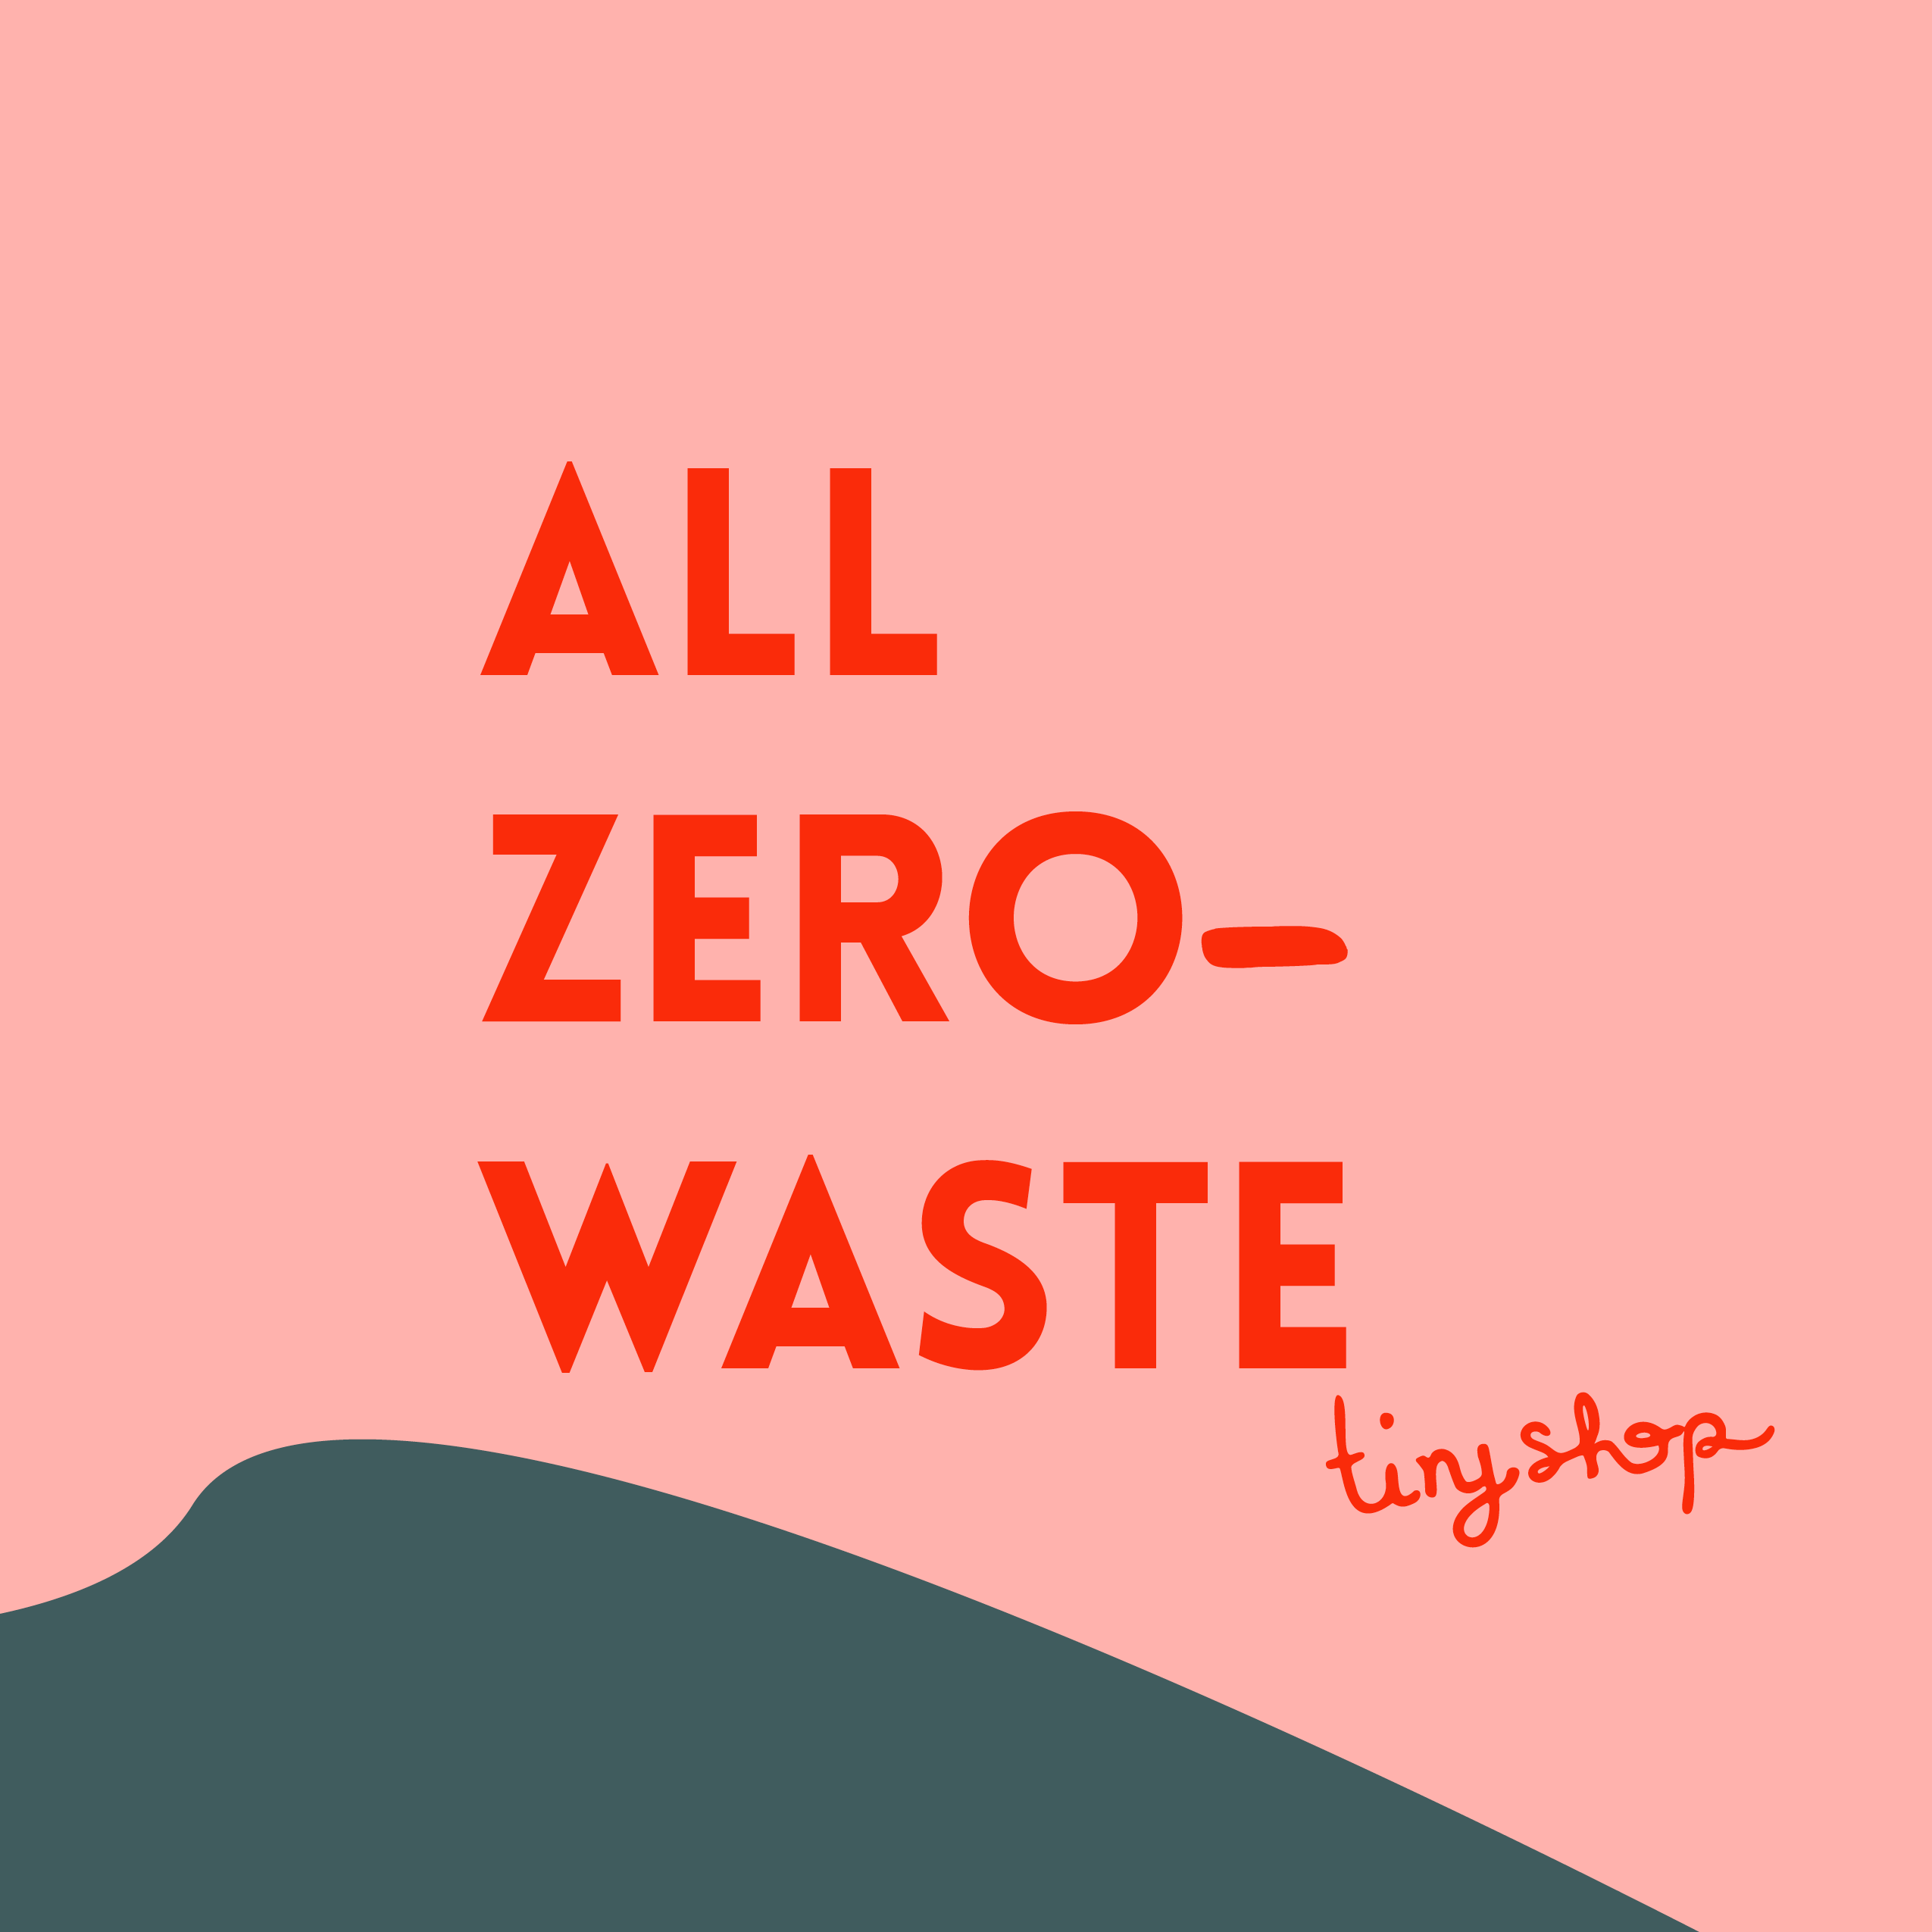 Zero waste